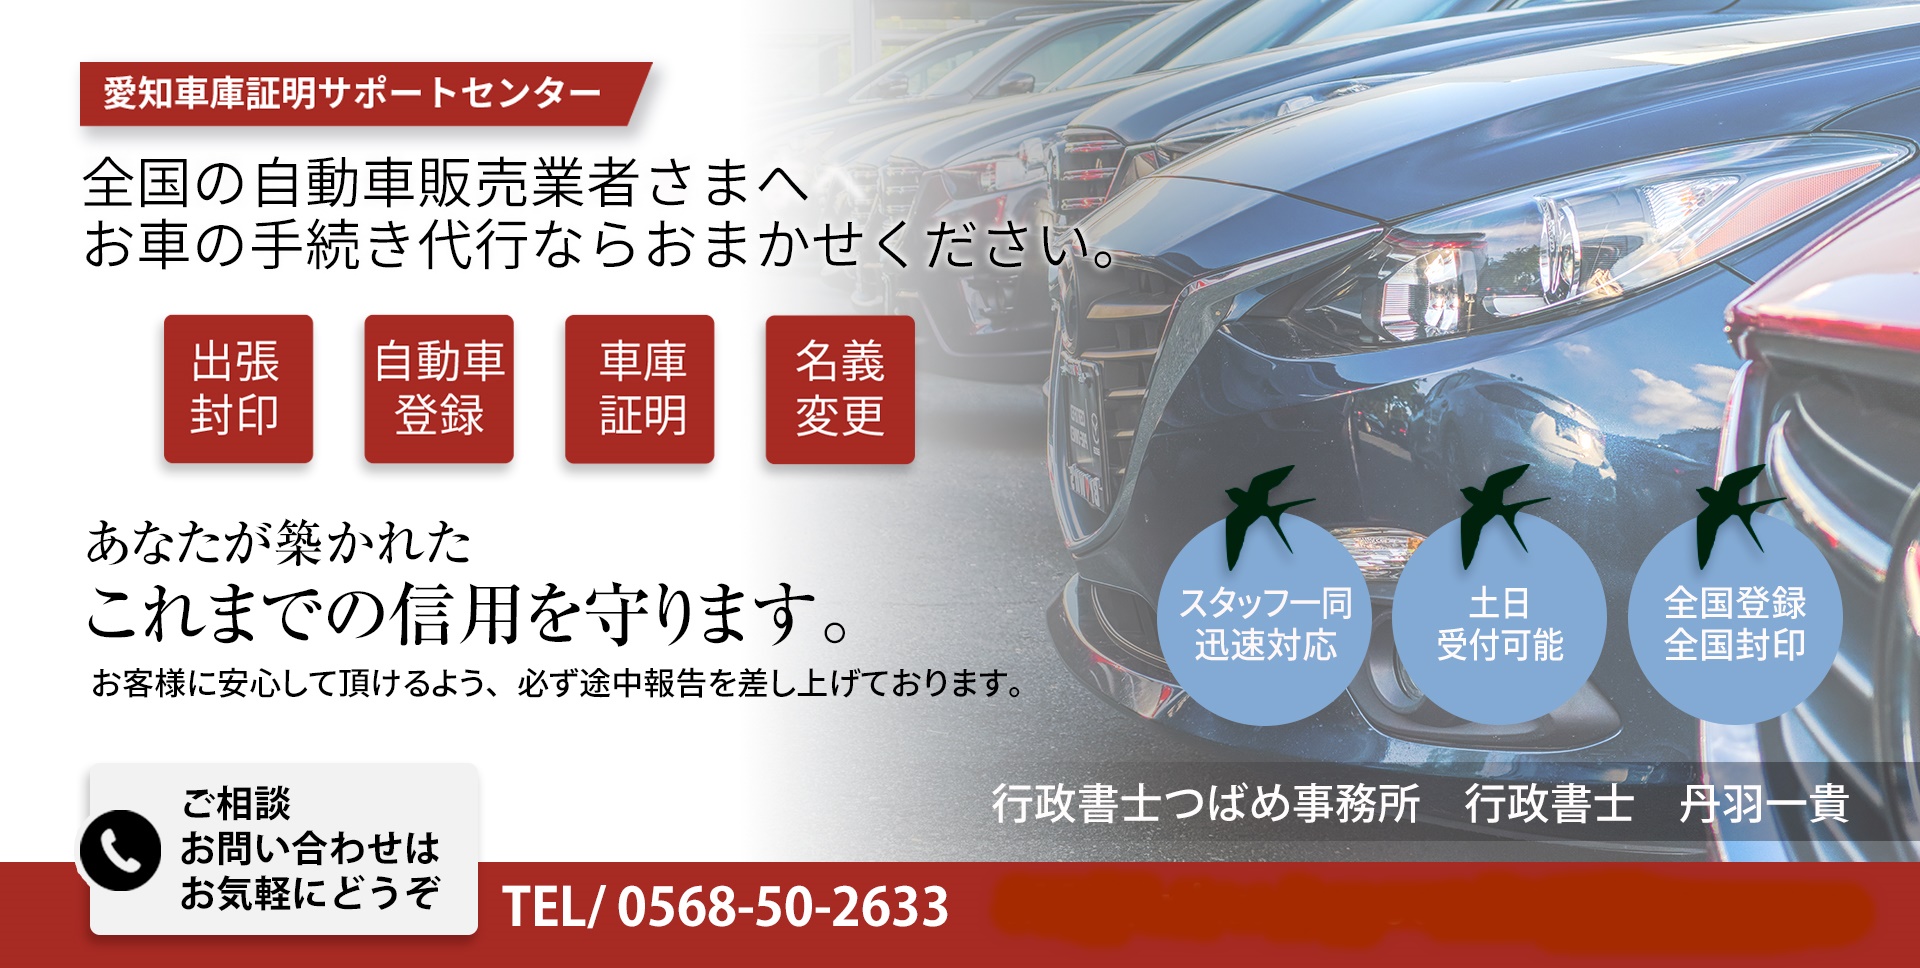 名古屋市西区の車庫証明 | 行政書士つばめ事務所が西警察署の車庫証明を代行します